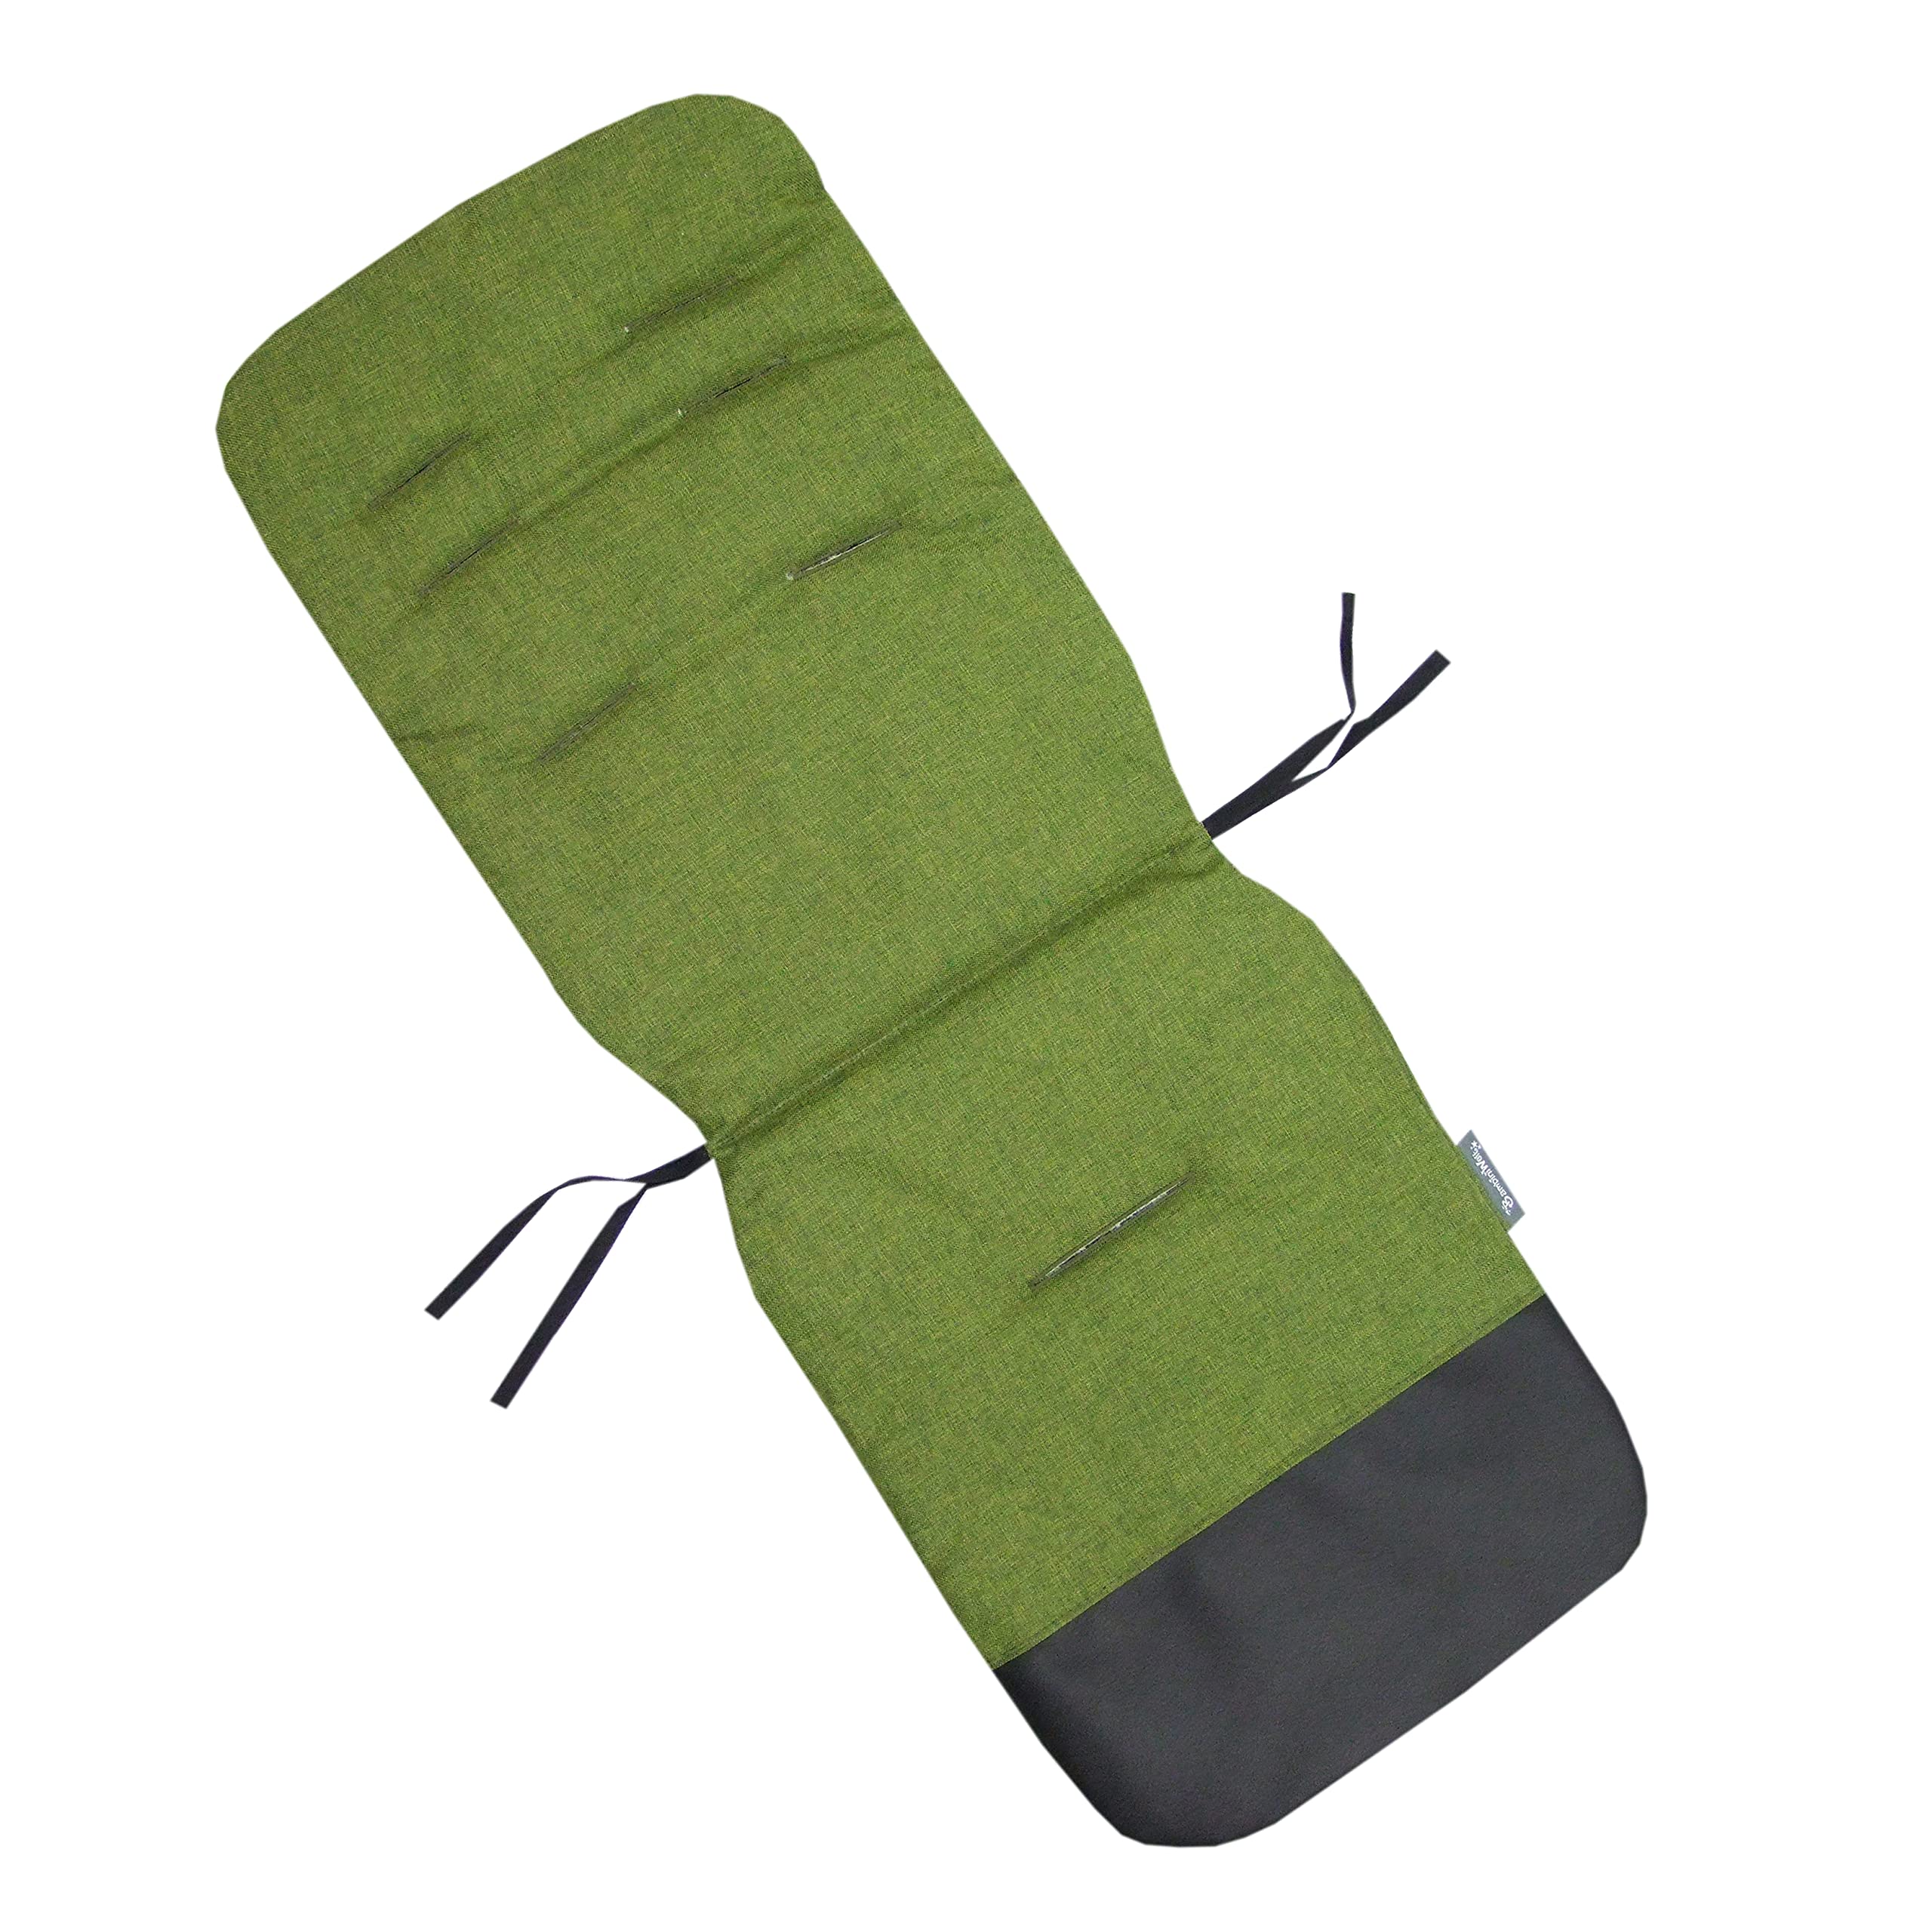 BAMBINIWELT Sitzauflage Unterlage für Buggy Kinderwagen Wendeunterlage Auflage mit Schutz aus Leder (meliert grün)